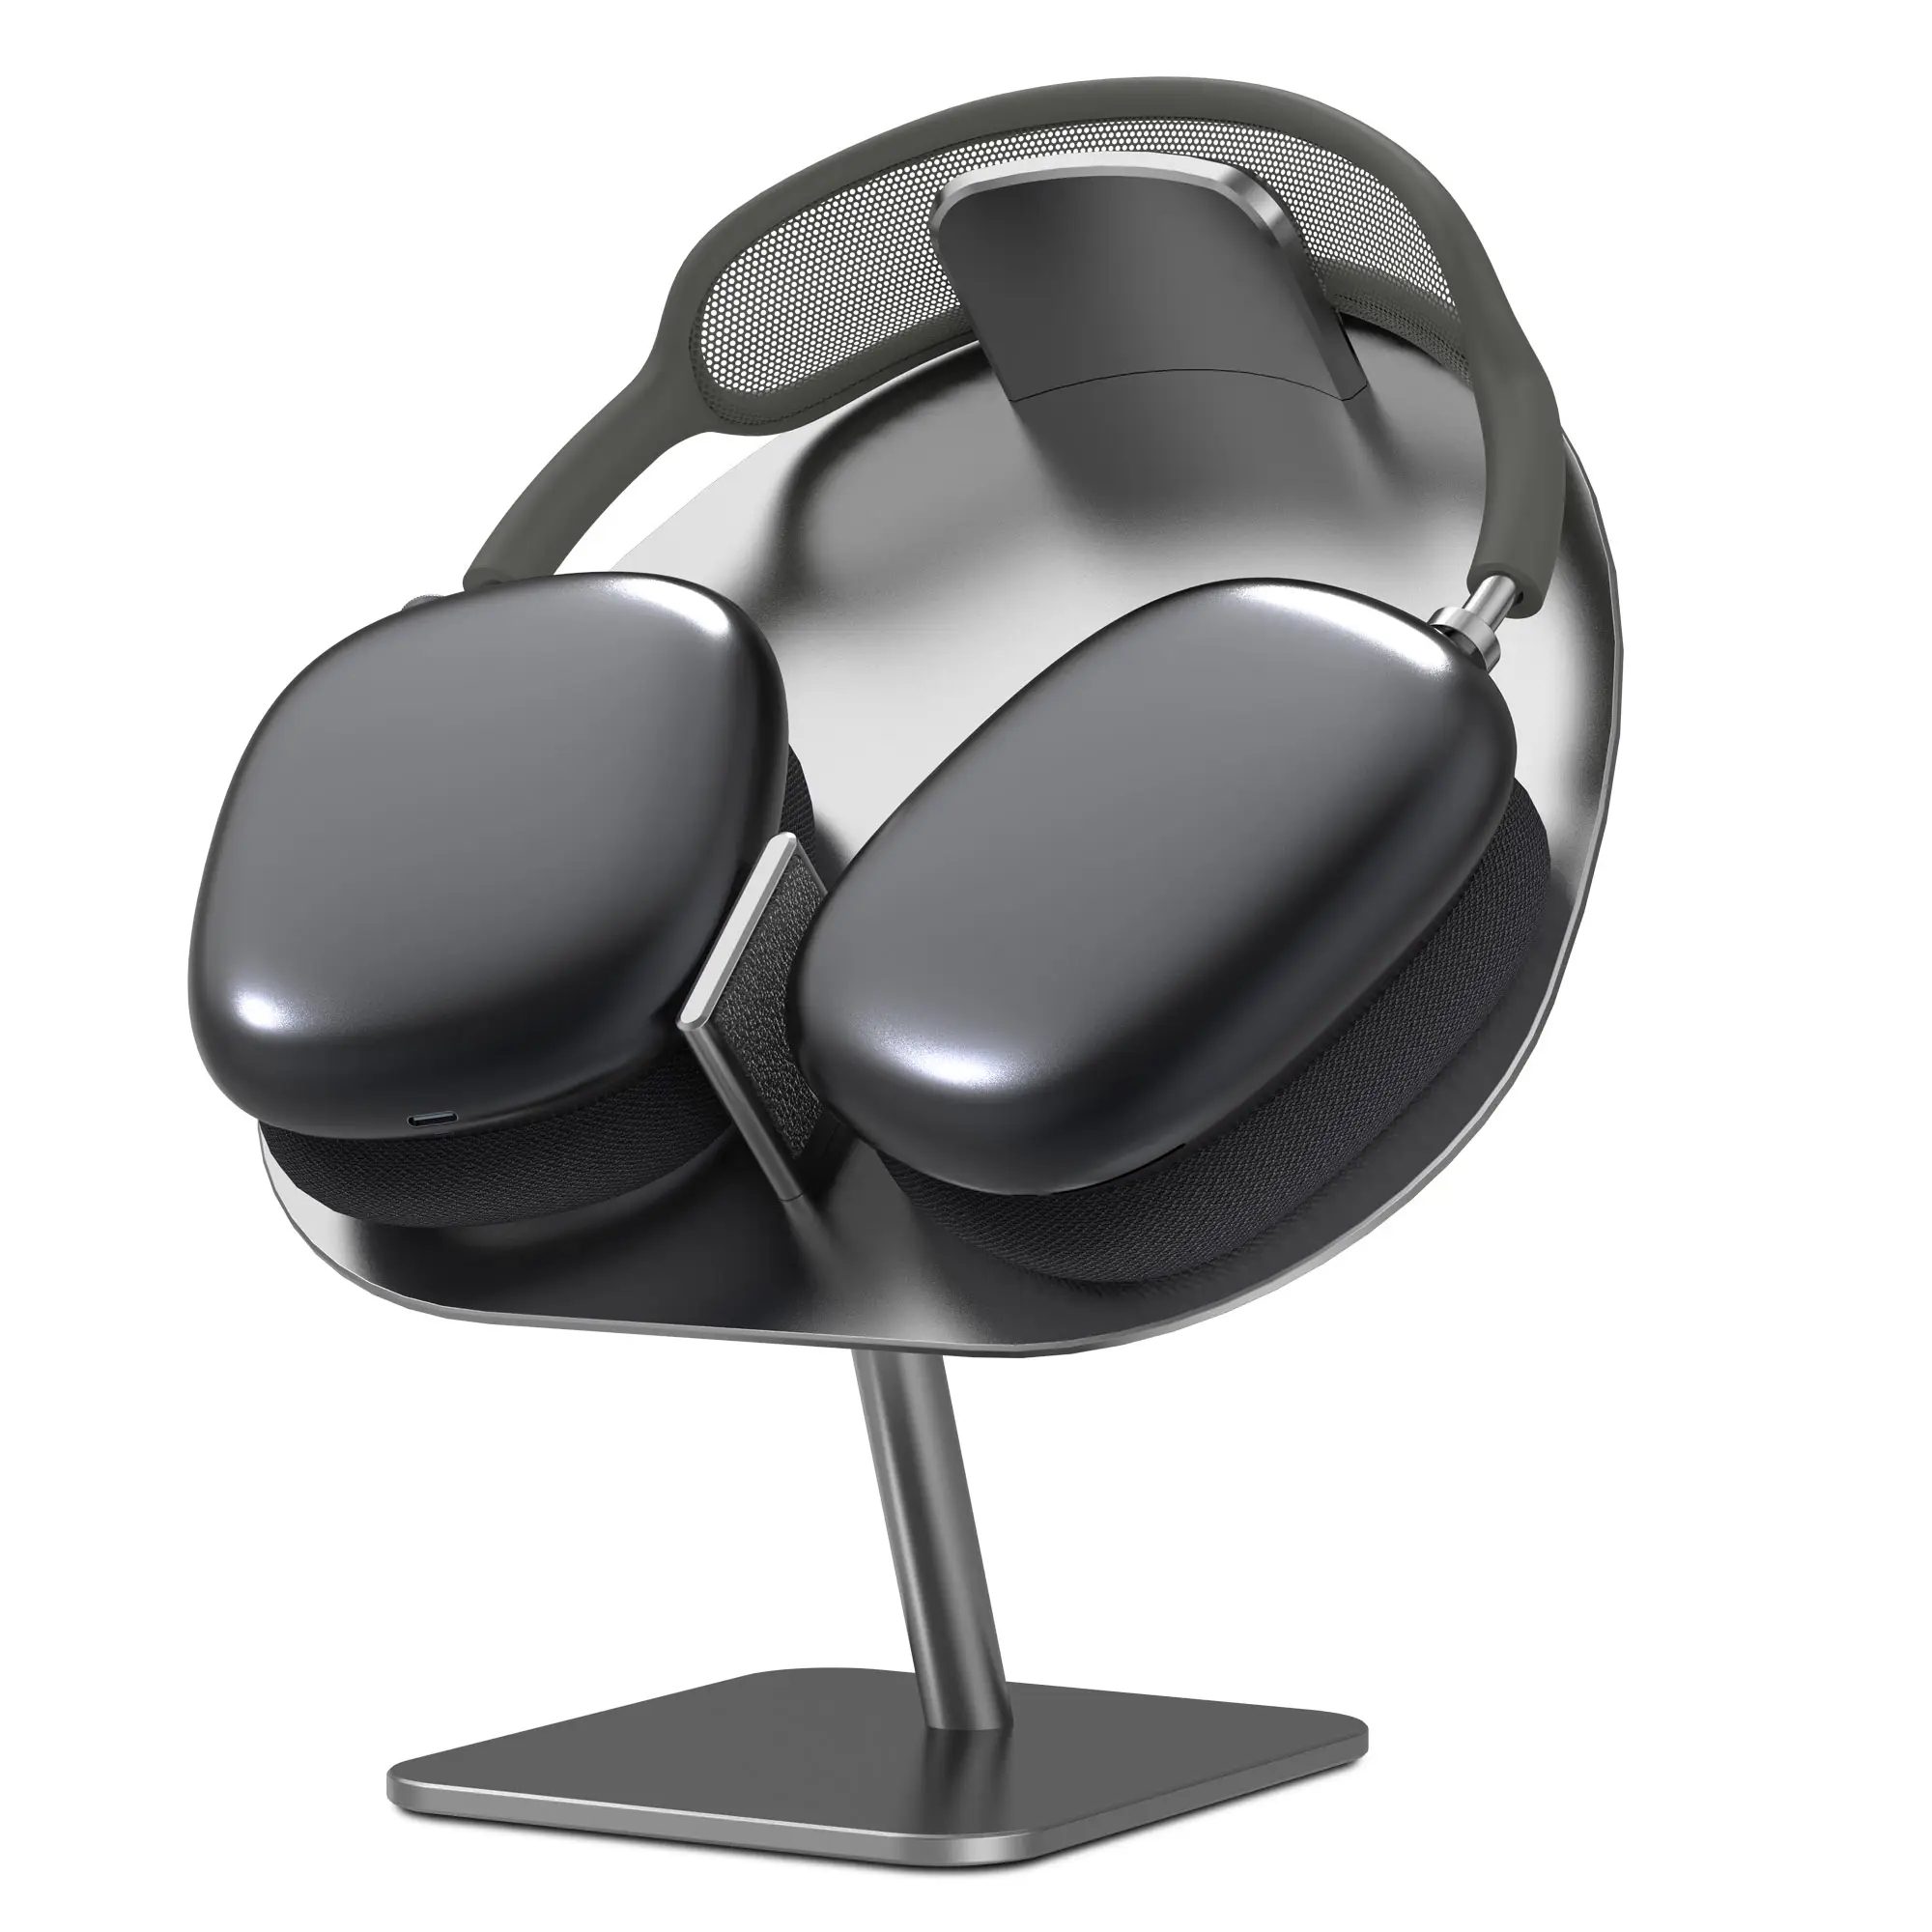 Wiwu Desktop Hoofdtelefoon Stand Smart Auto Sleep Metalen Houder Voor Airpods Max High Tech Auto-Sleep Stand